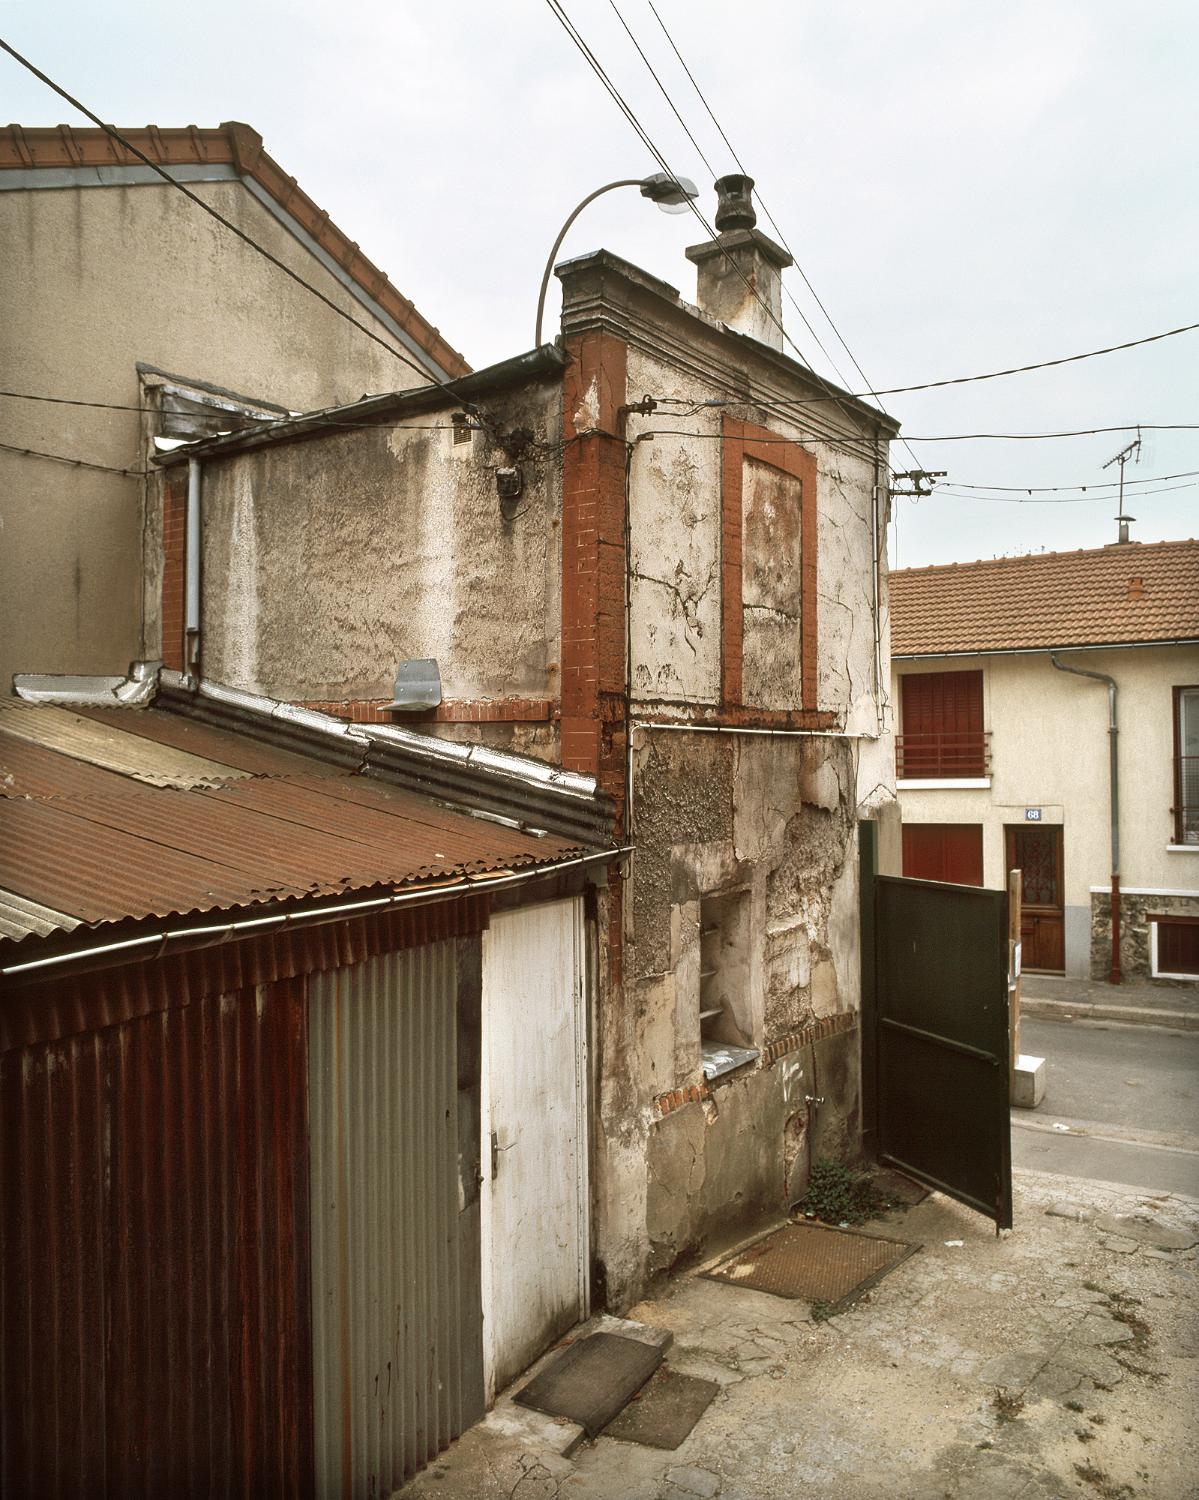 Entrepôt commercial Victor Magis, puis atelier de literie et atelier de tapissier Eberlin (détruit après inventaire)